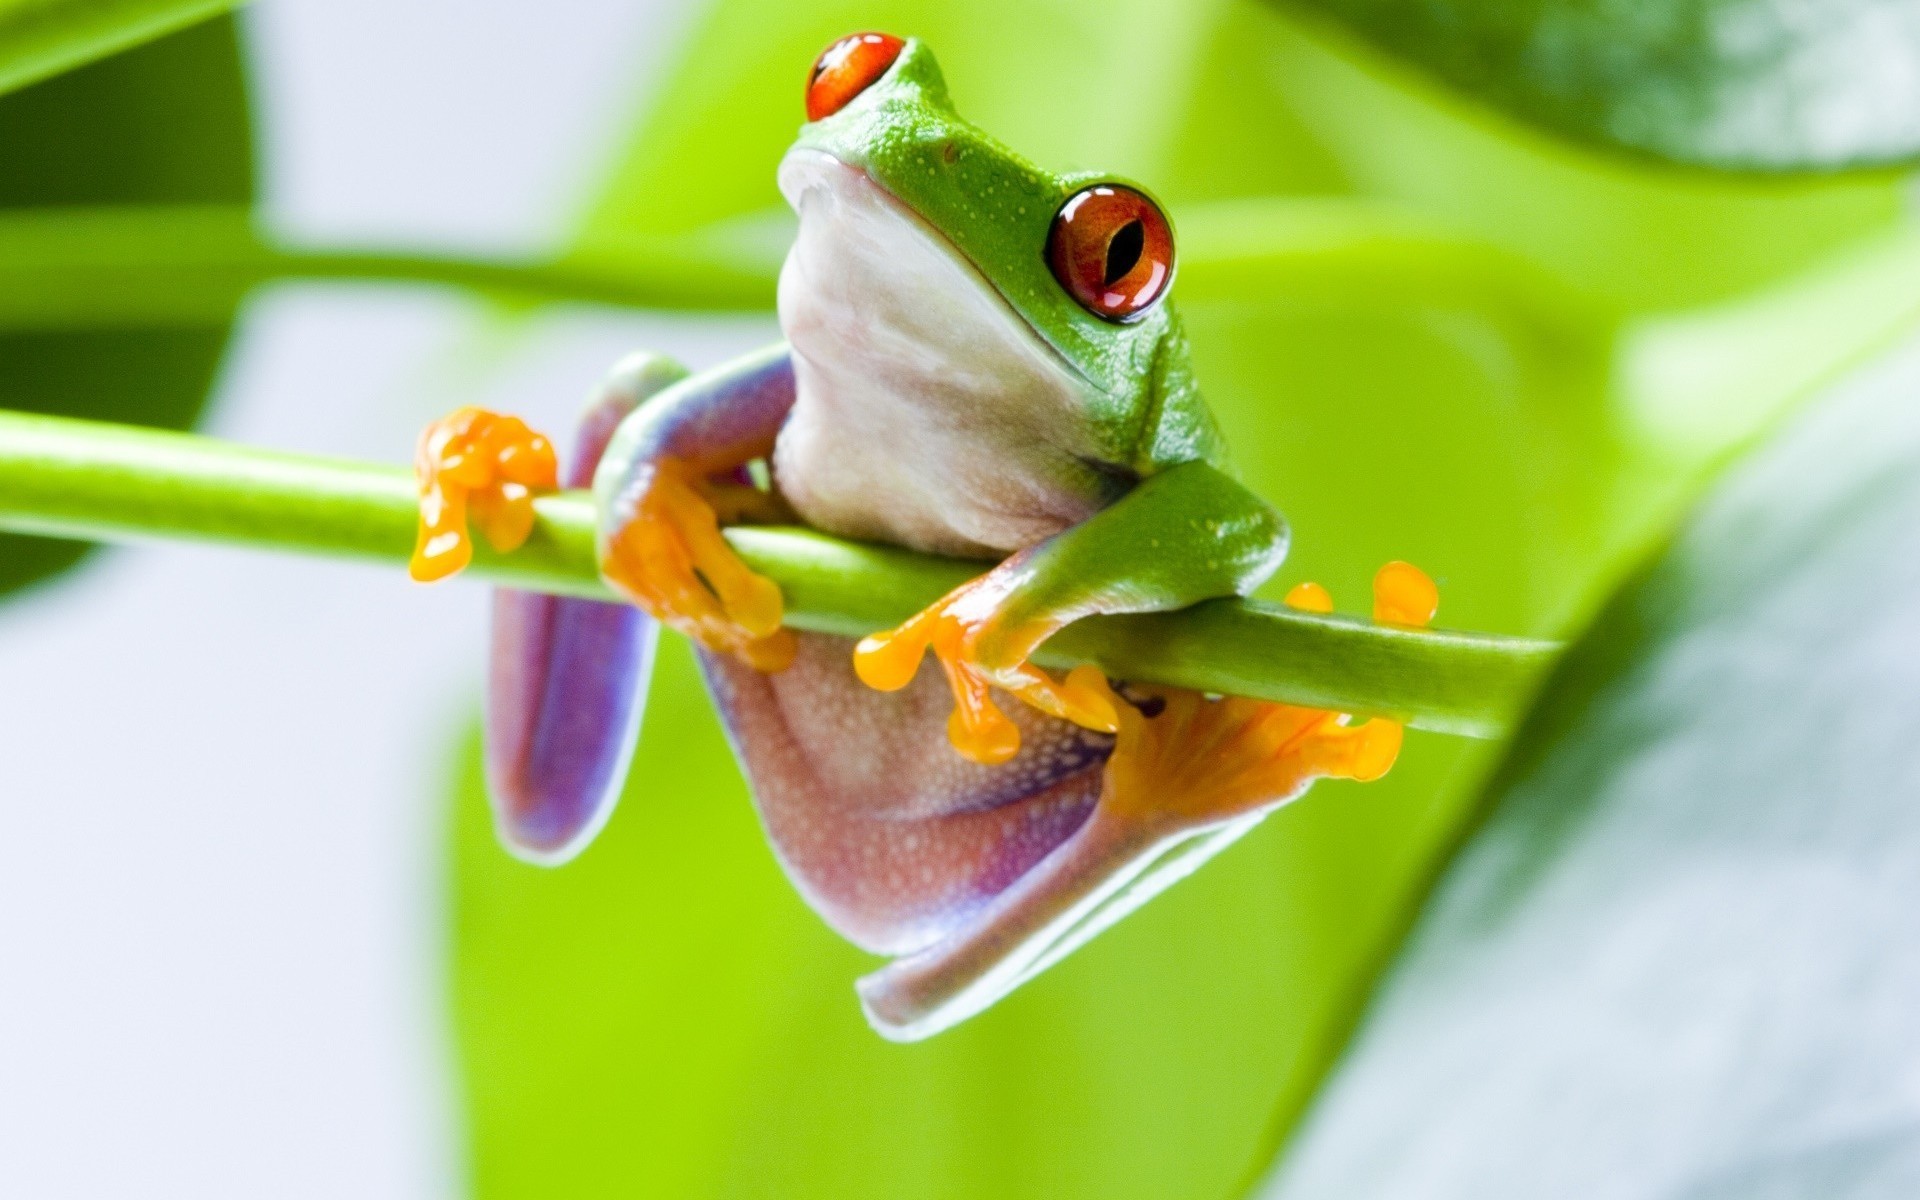 可爱的小青蛙趴在绿叶或枝头